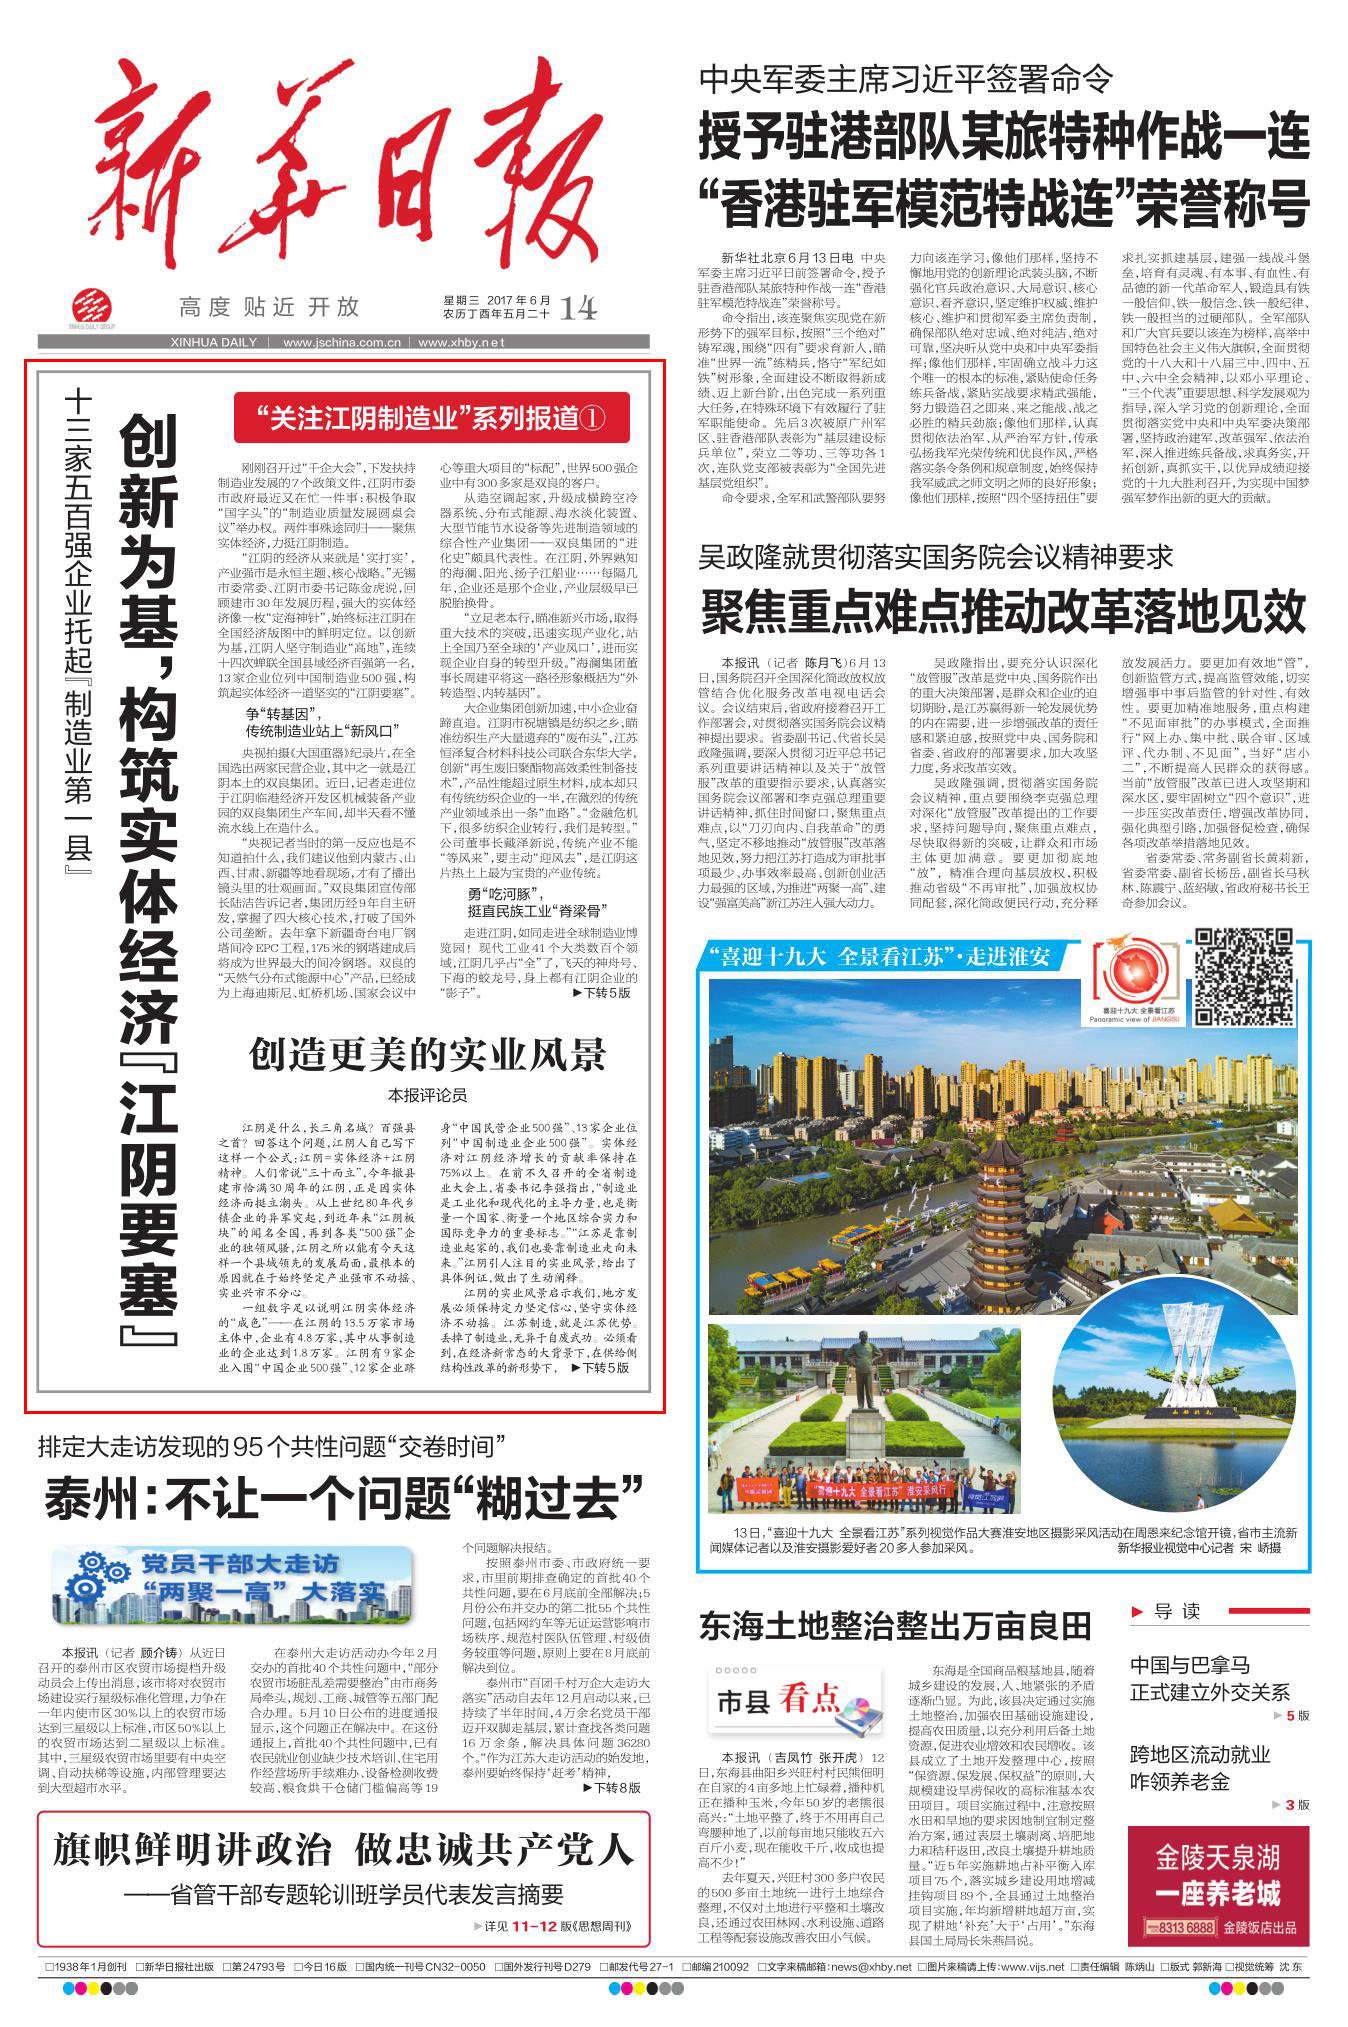 媒體報道：構築實體經濟「江陰要塞」